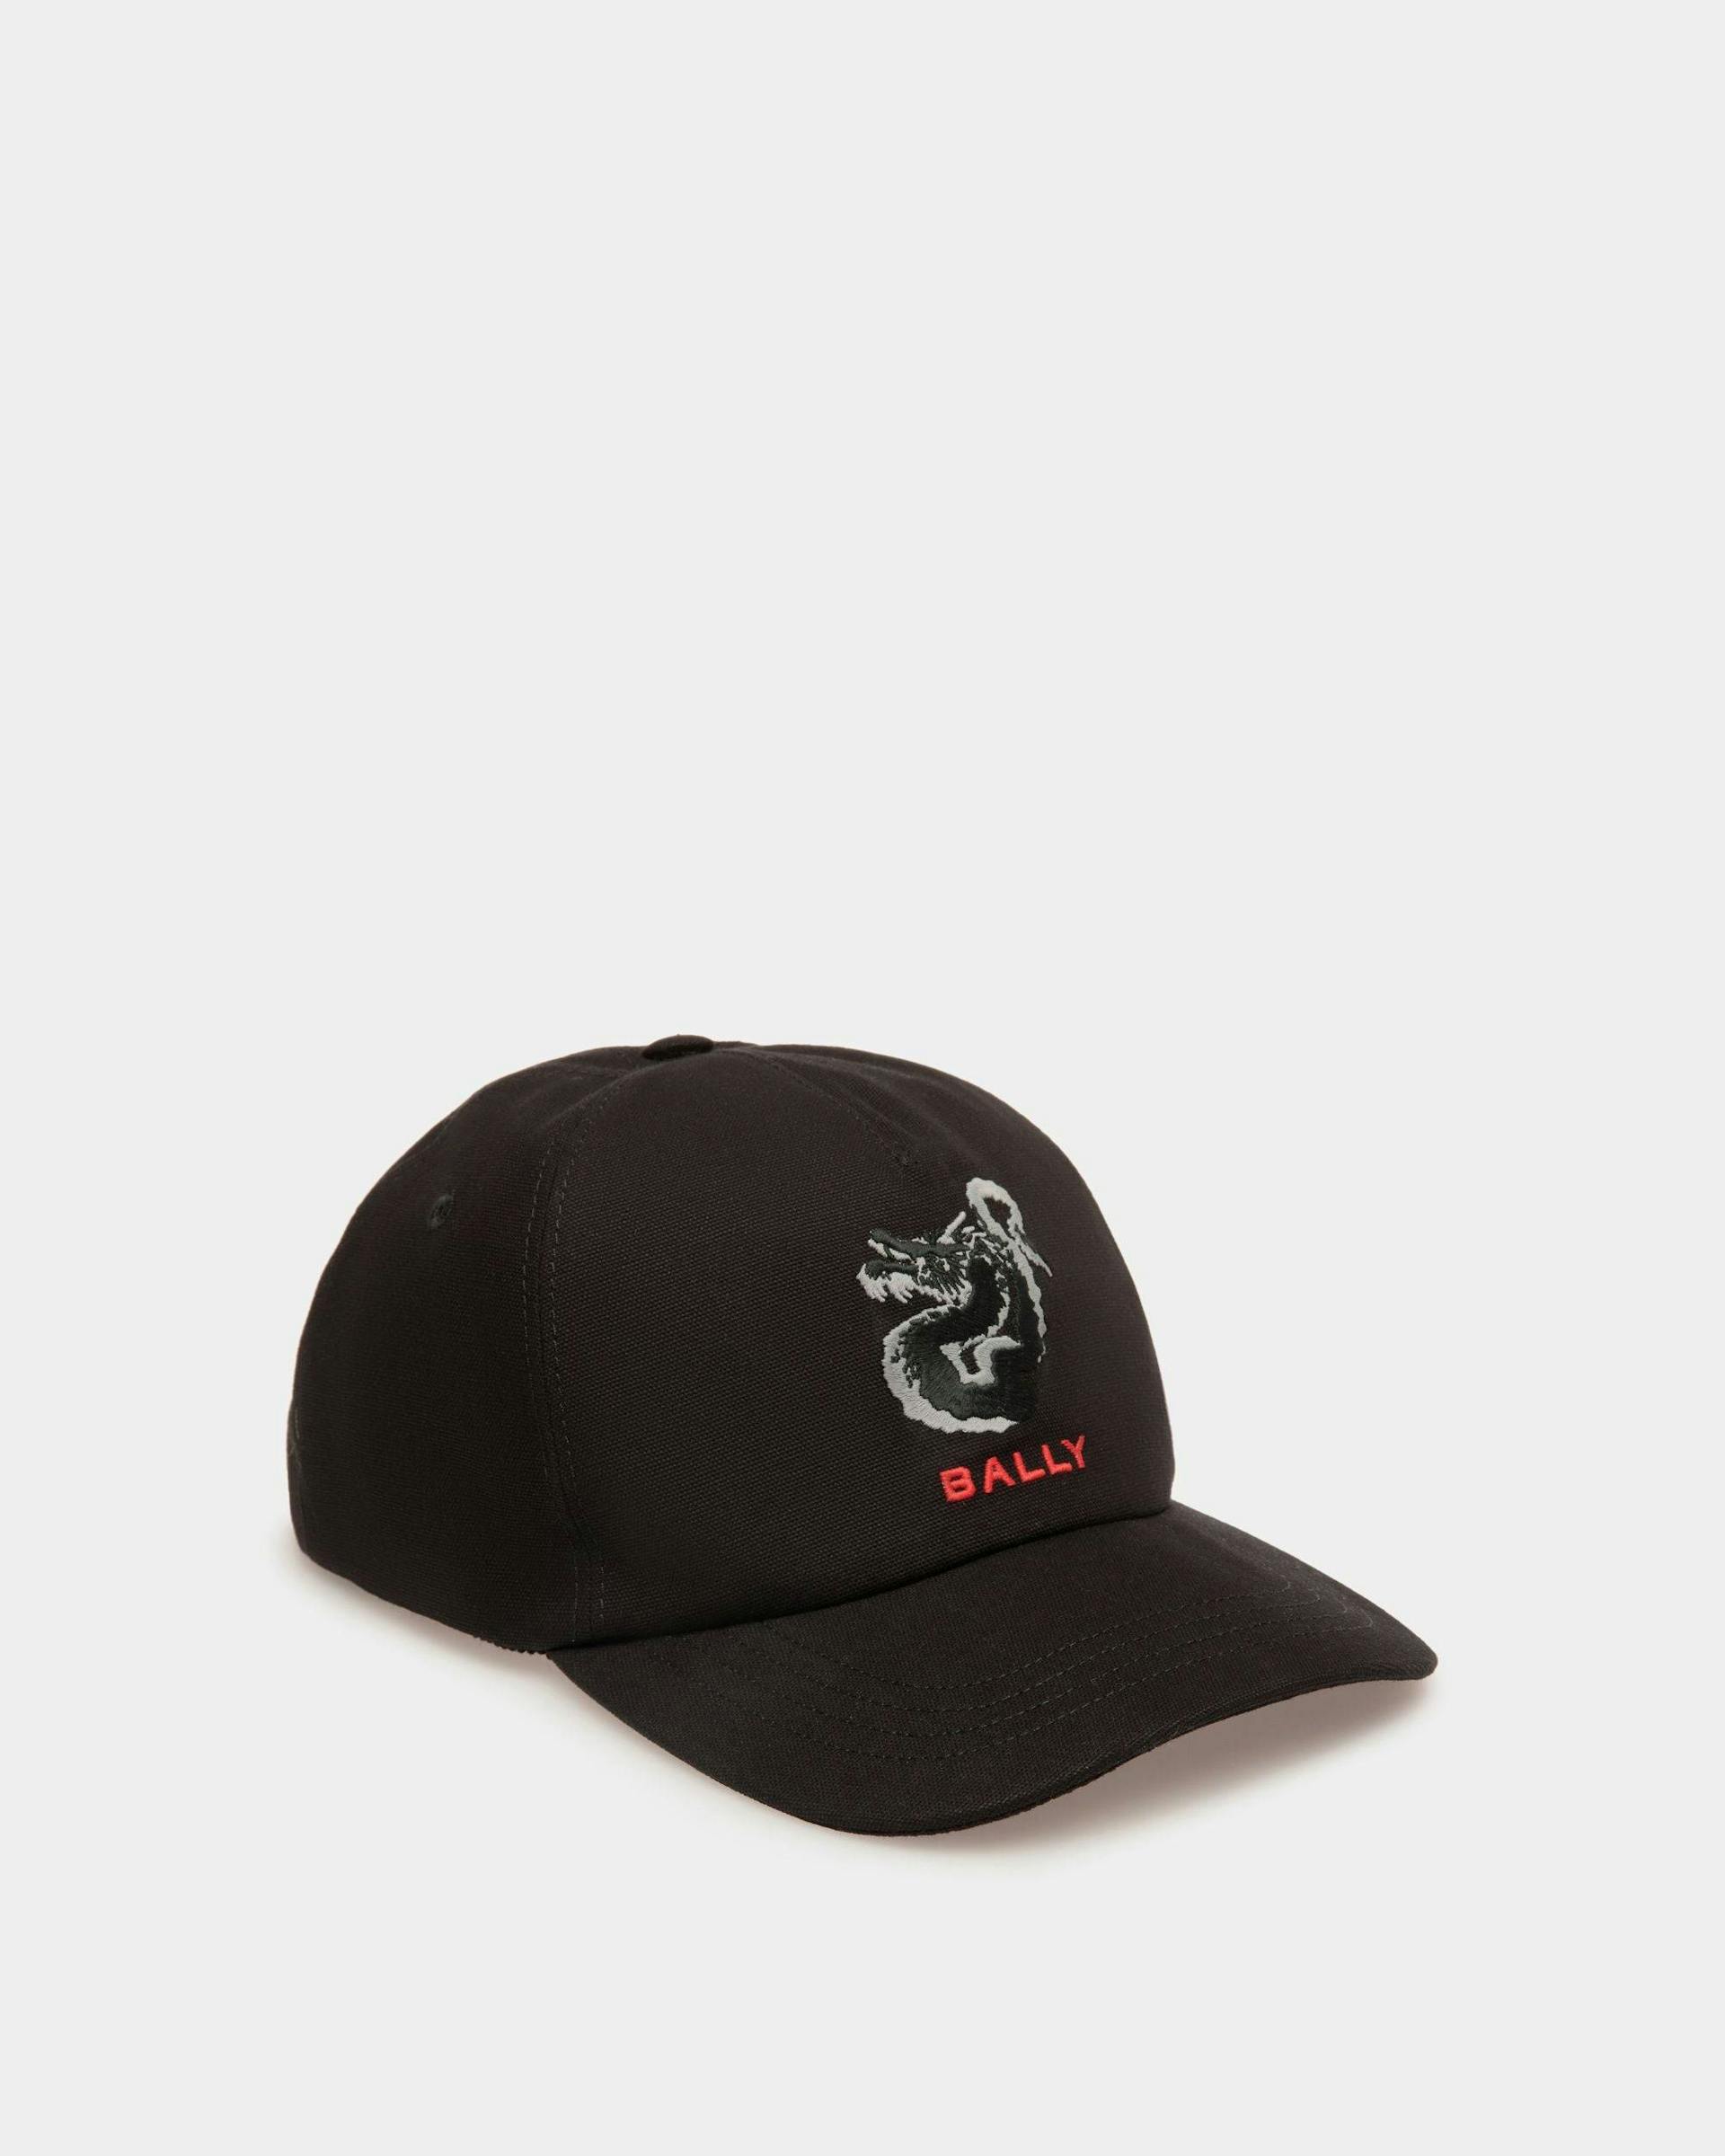 Men's Baseball Hat In Black Cotton | Bally | Still Life Front